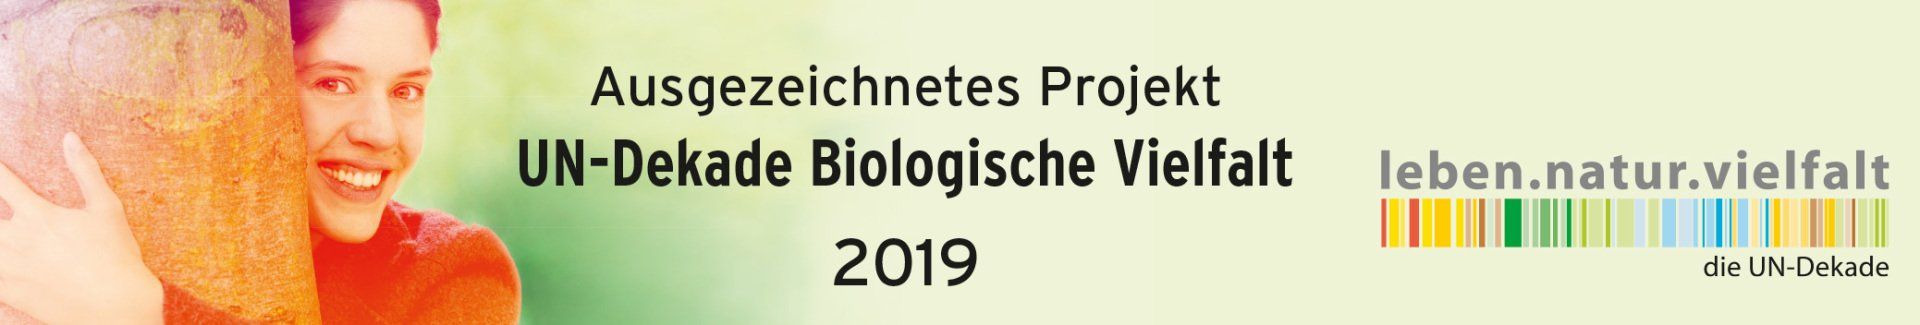 Ausgezeichnetes Projekt UN-Dekade Biologische Vielfalt 2019